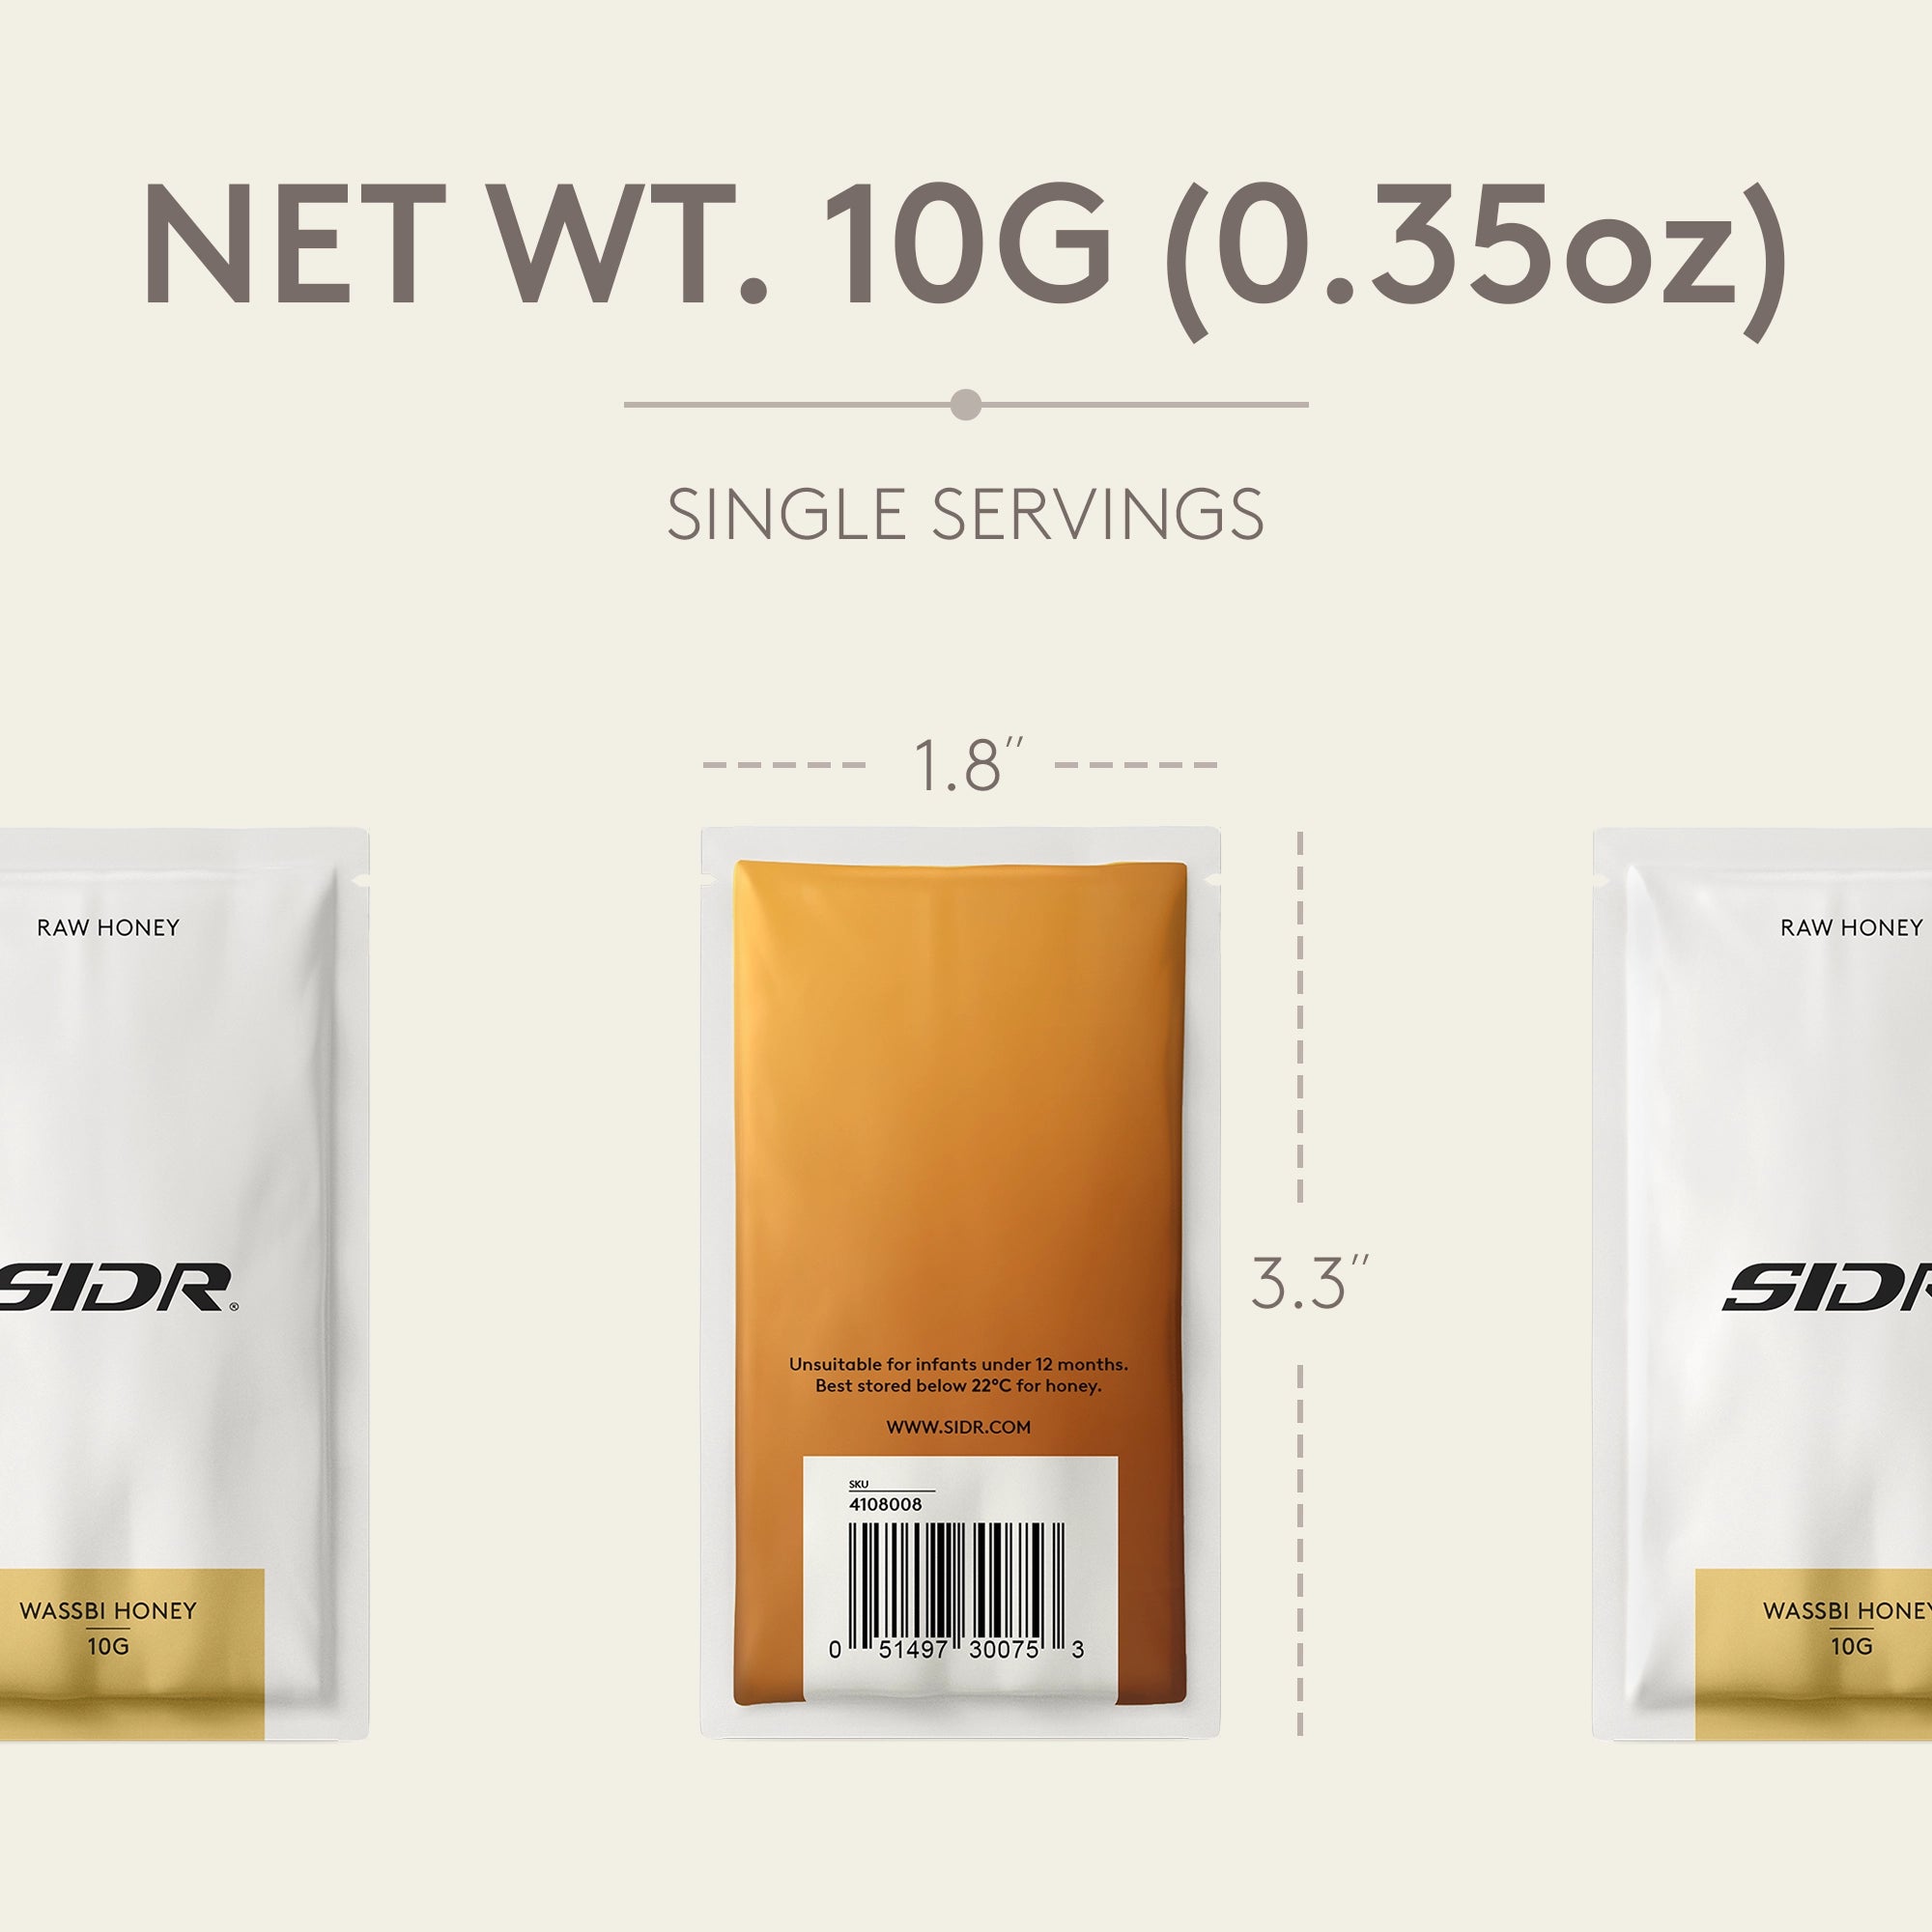 sidr wassbi honey packet net weight